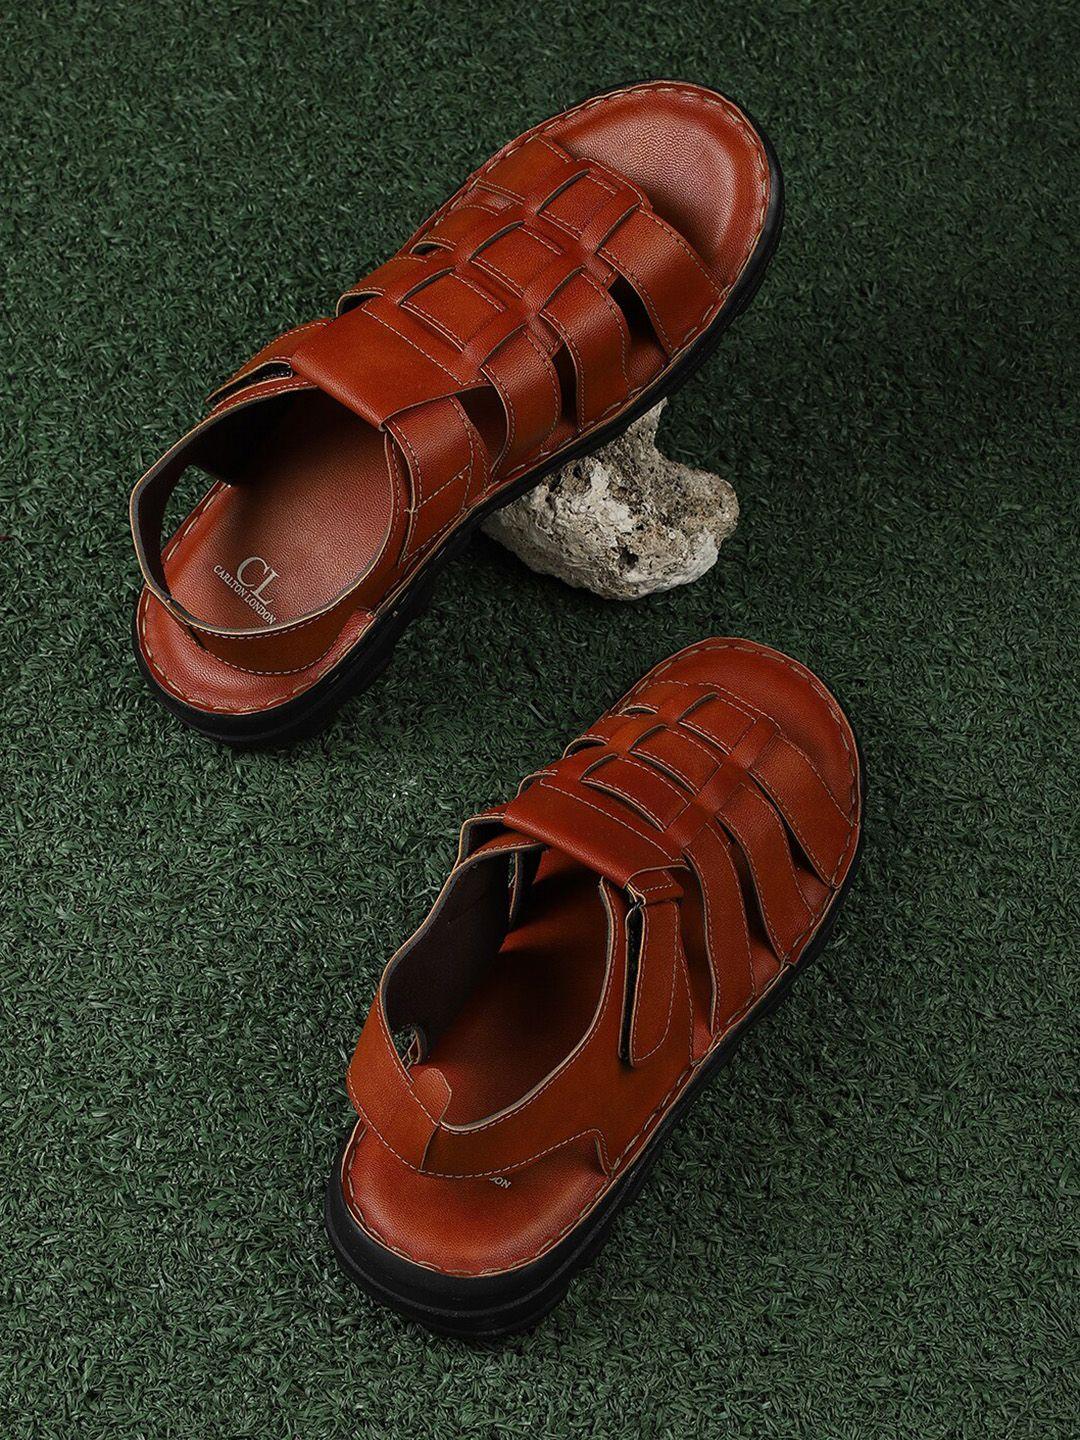 carlton-london-men-tan-comfort-sandals